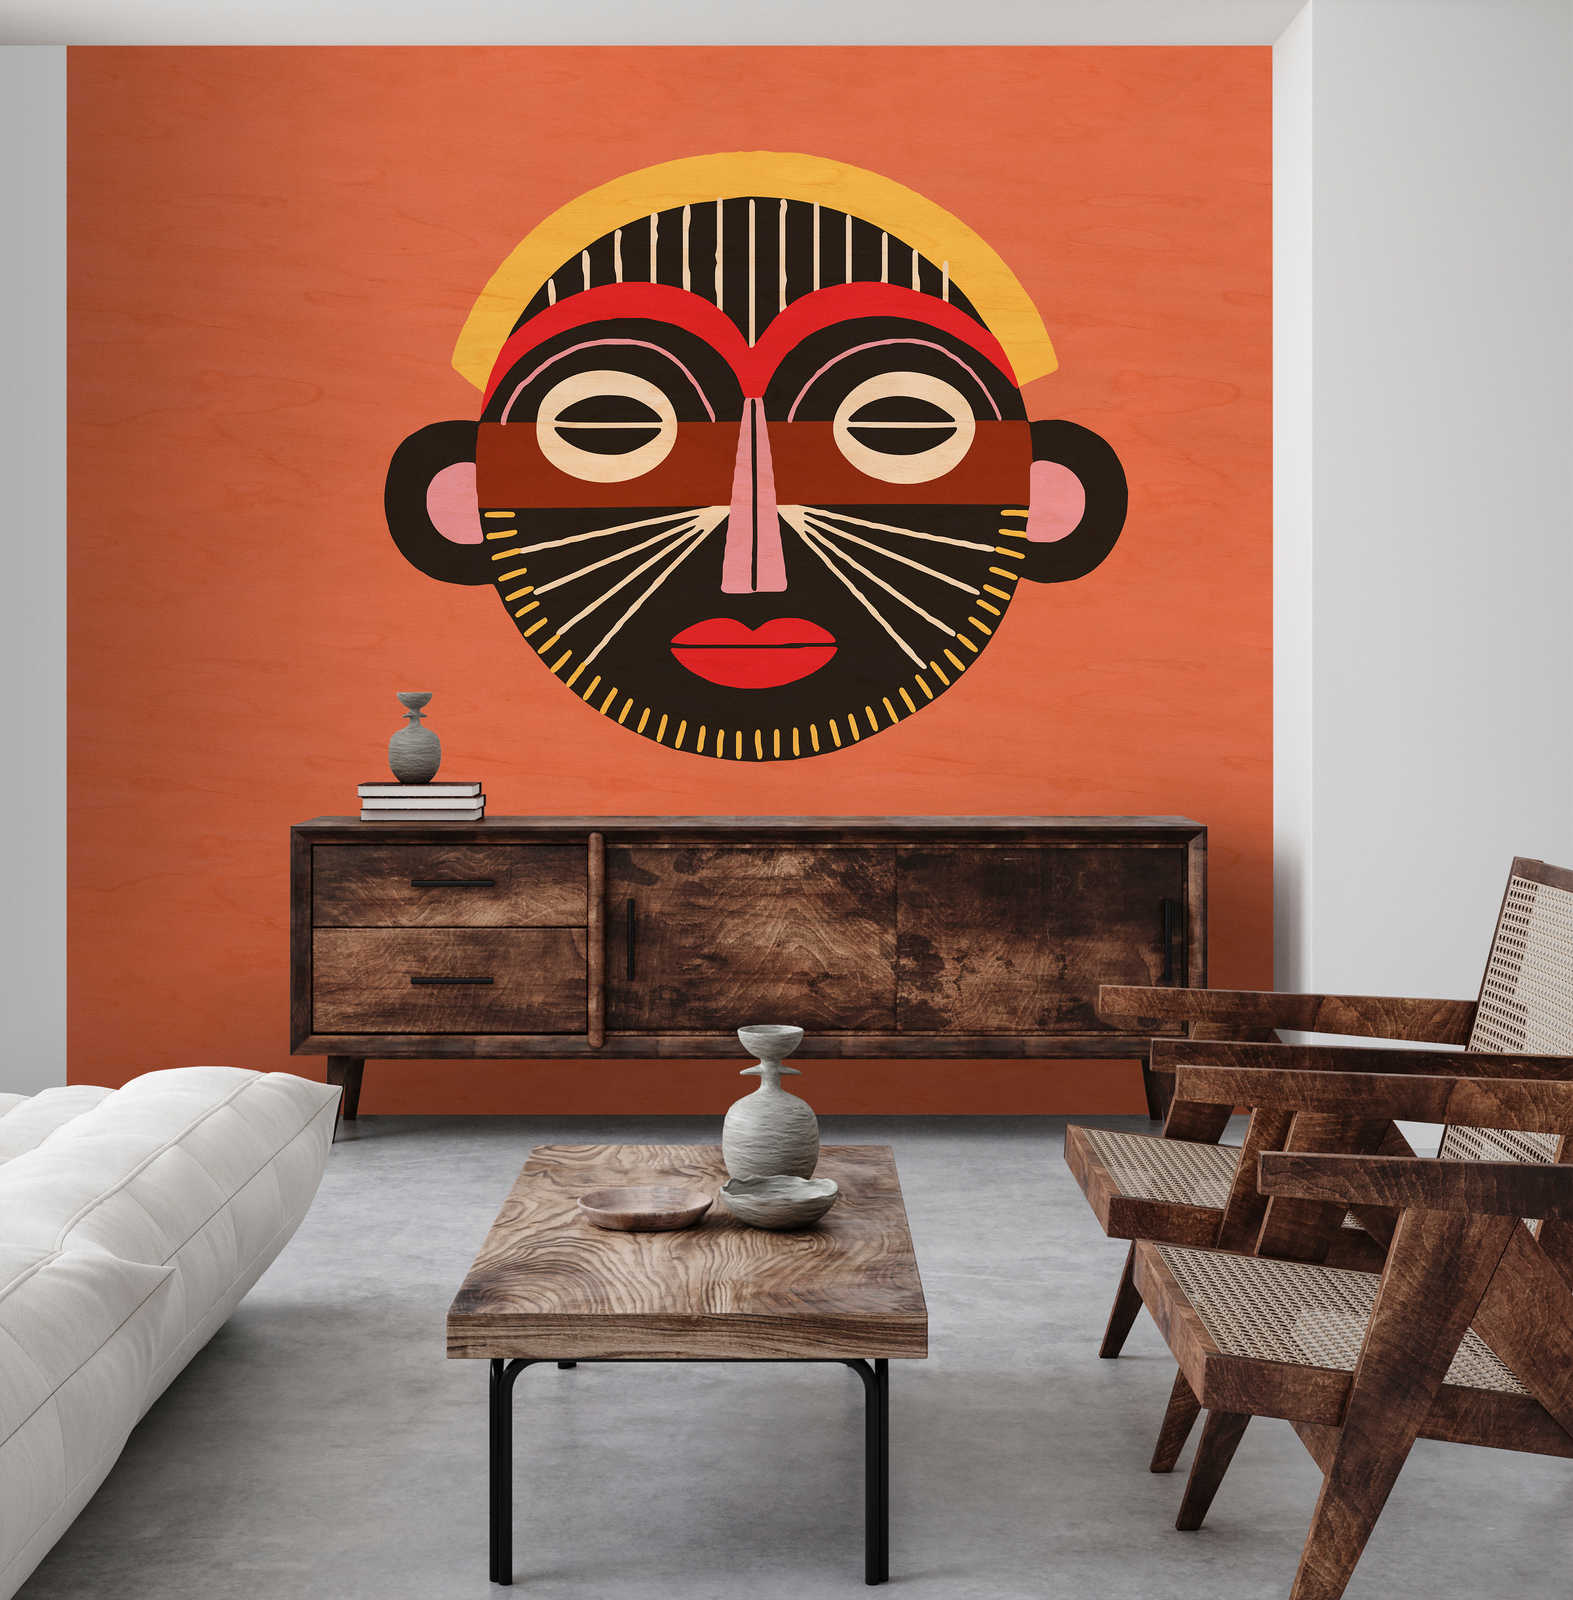             Overseas 2 - Papier peint ethnique Masque au design tribal
        